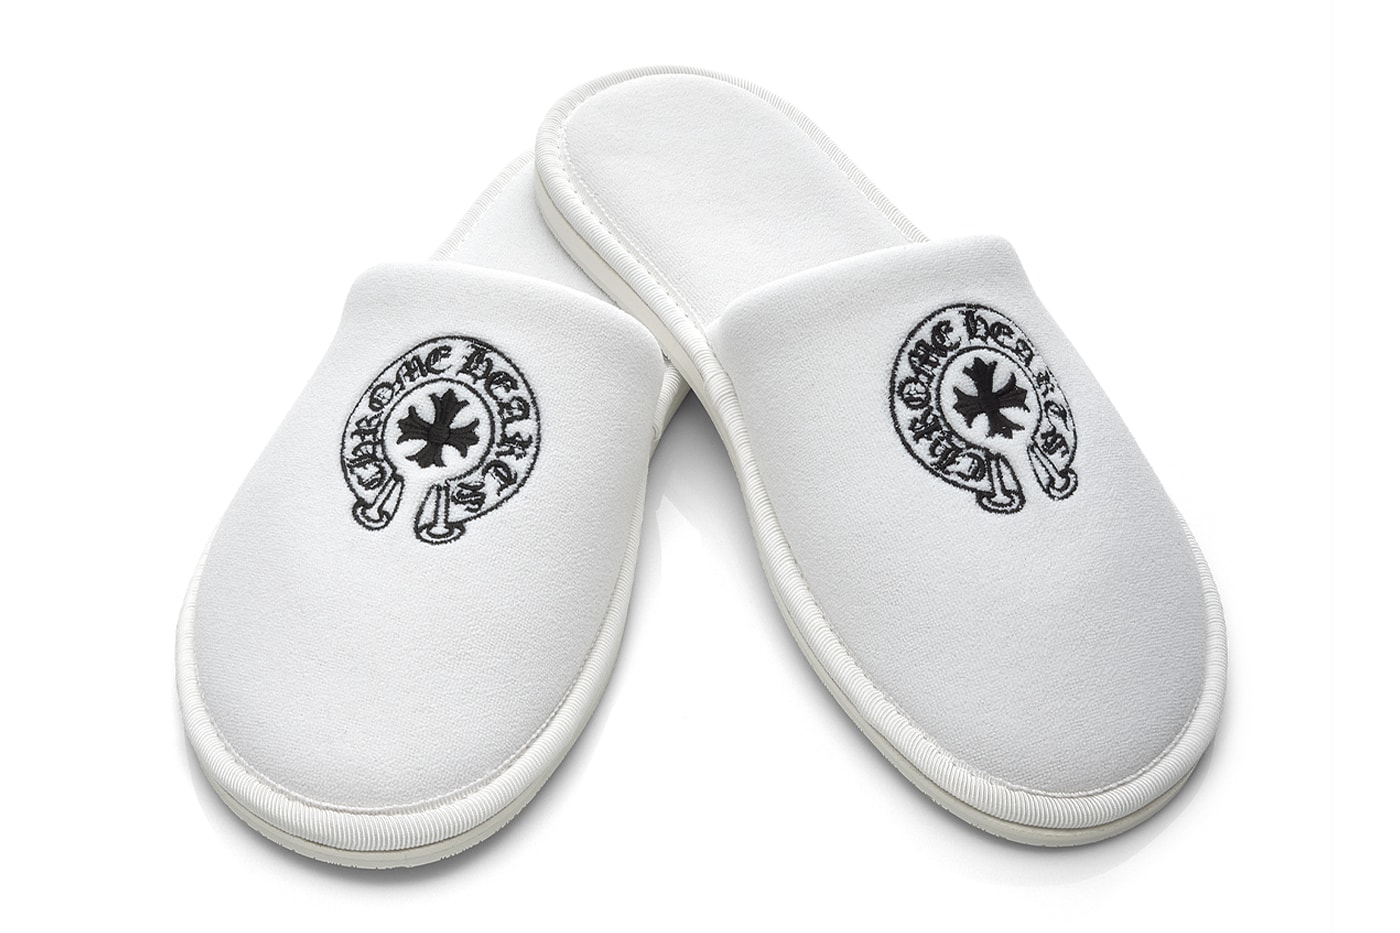 クロムハーツが9万円超えのホテルスリッパを発売 Chrome Hearts 475 USD Hotel Slippers Release Information details date footwear sandals